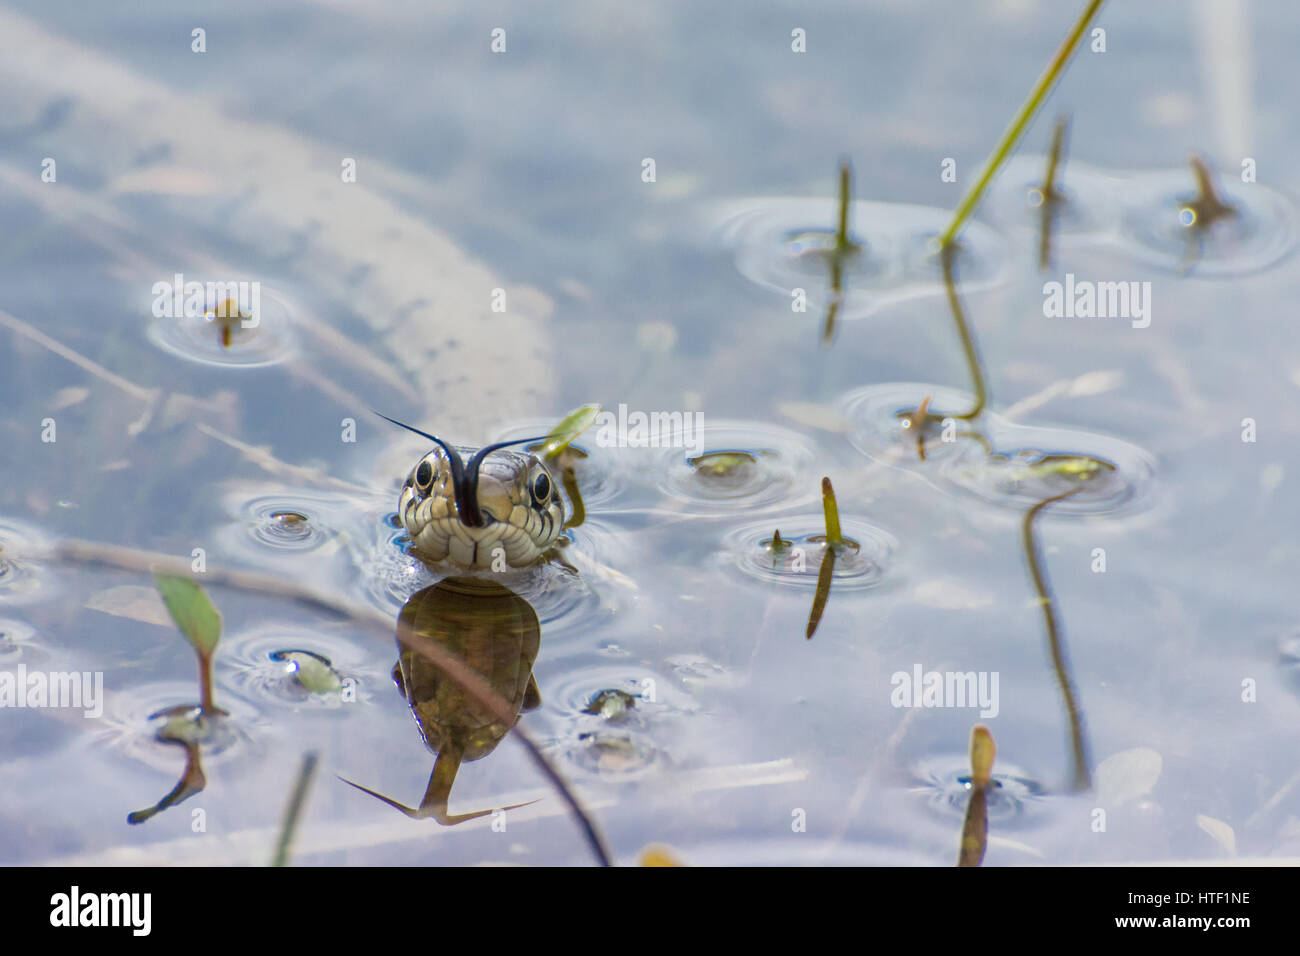 Nahaufnahme einer Grasnatter (Natrix natrix), die in einem Teich schwimmt, Großbritannien - Kopfaufnahme mit Zungenflippen (Chemosensing). Tierischer Humor, Humor. Stockfoto